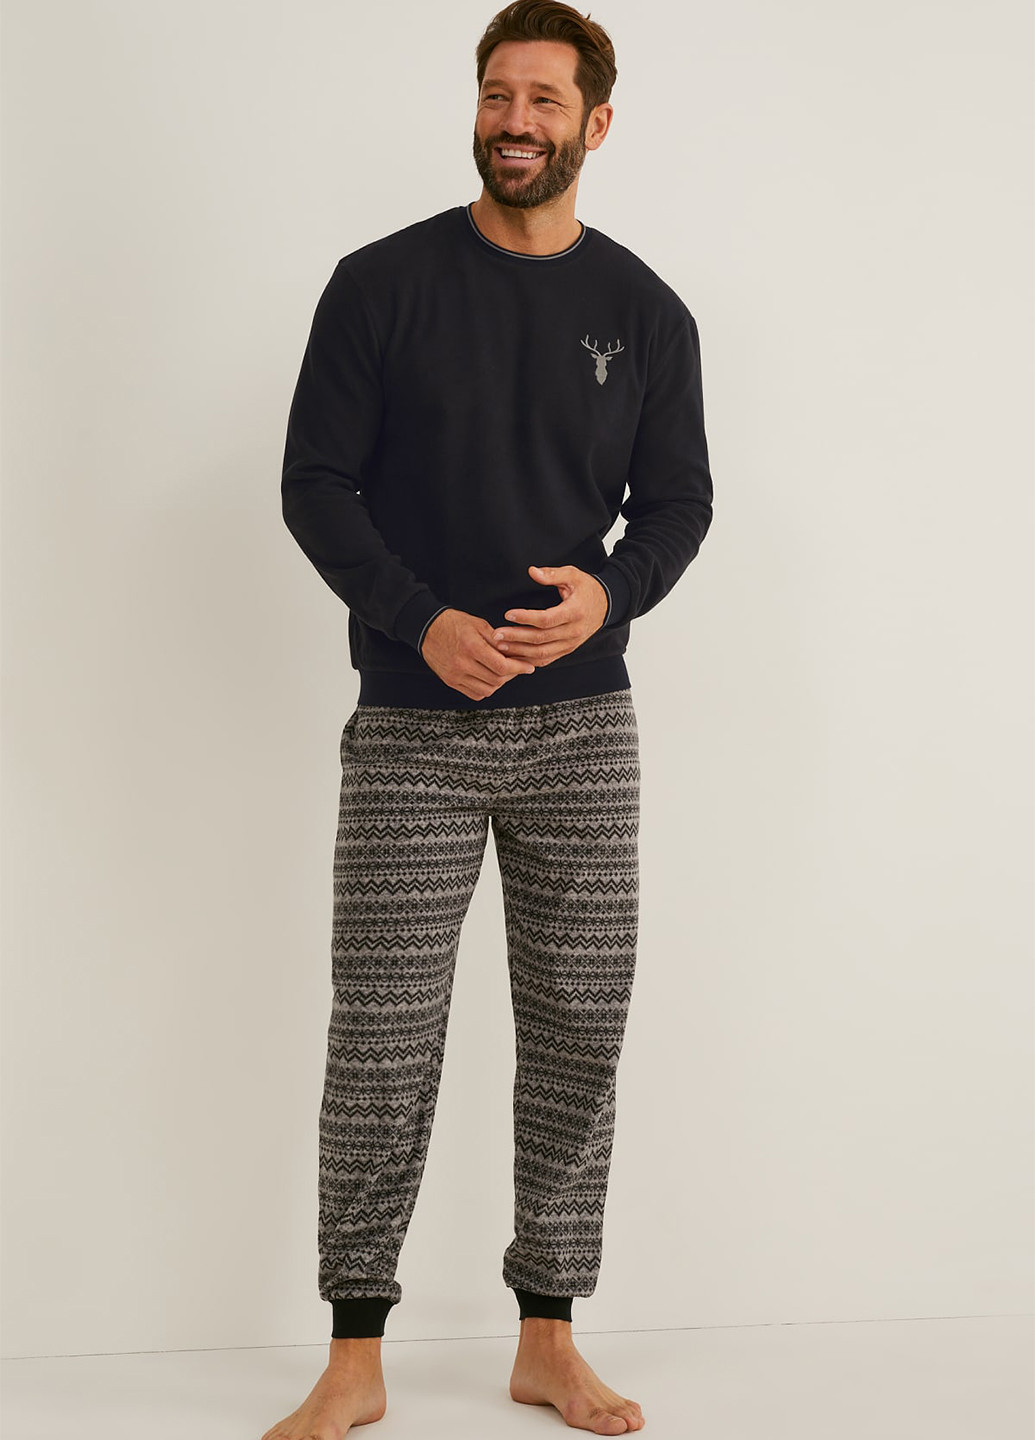 Пижама (свитшот, брюки) C&A свитшот + брюки орнамент чёрная домашняя полиэстер, трикотаж